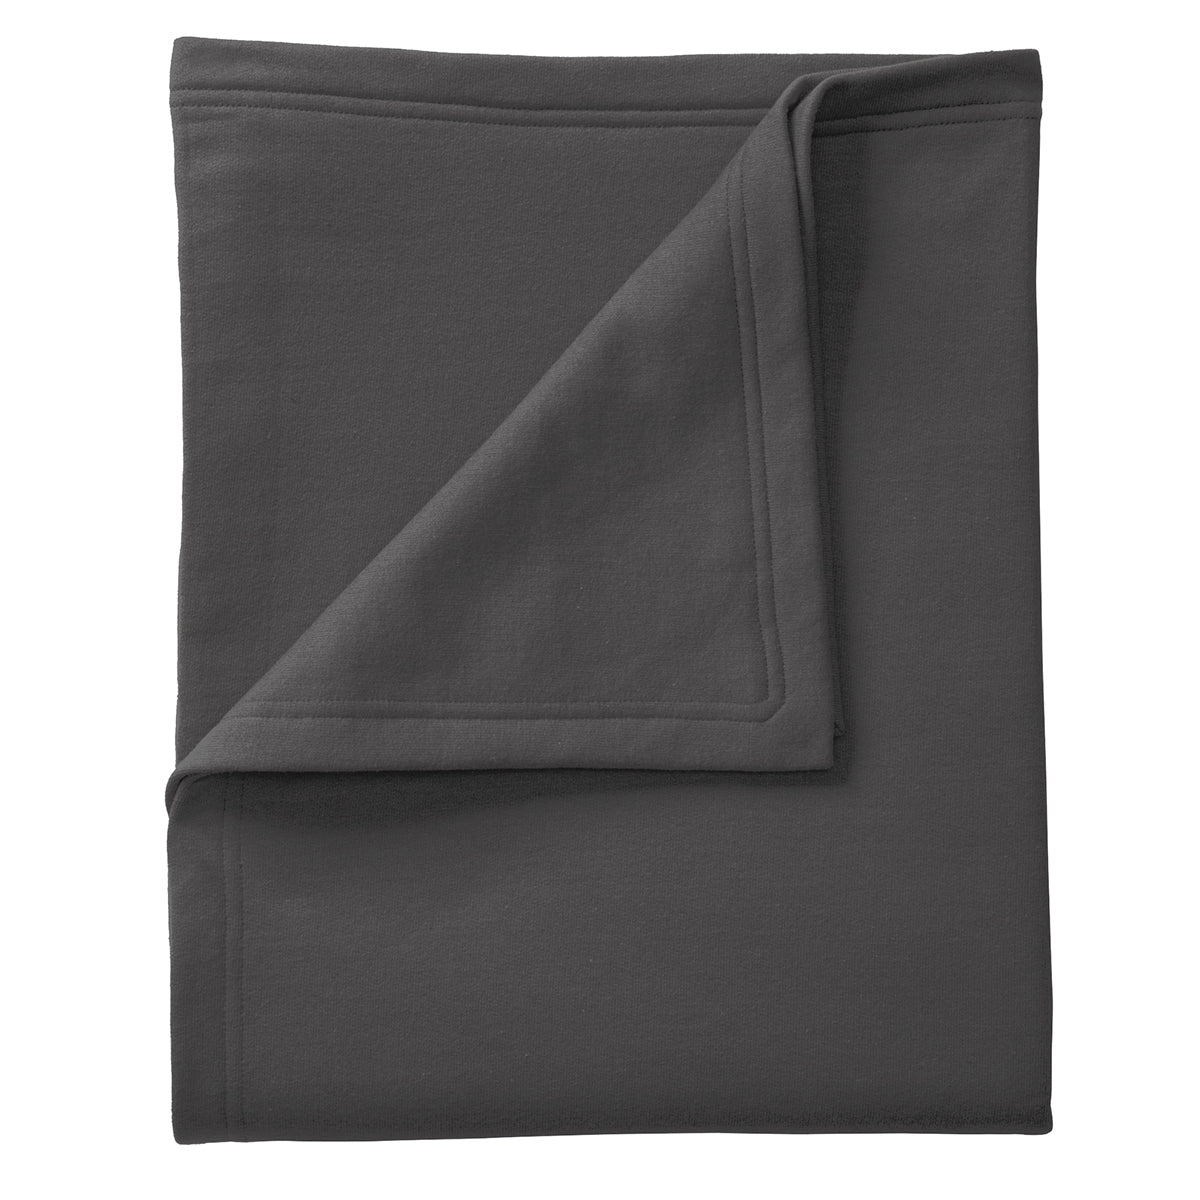 Core Fleece Sweatshirt Blanket - Charcoal